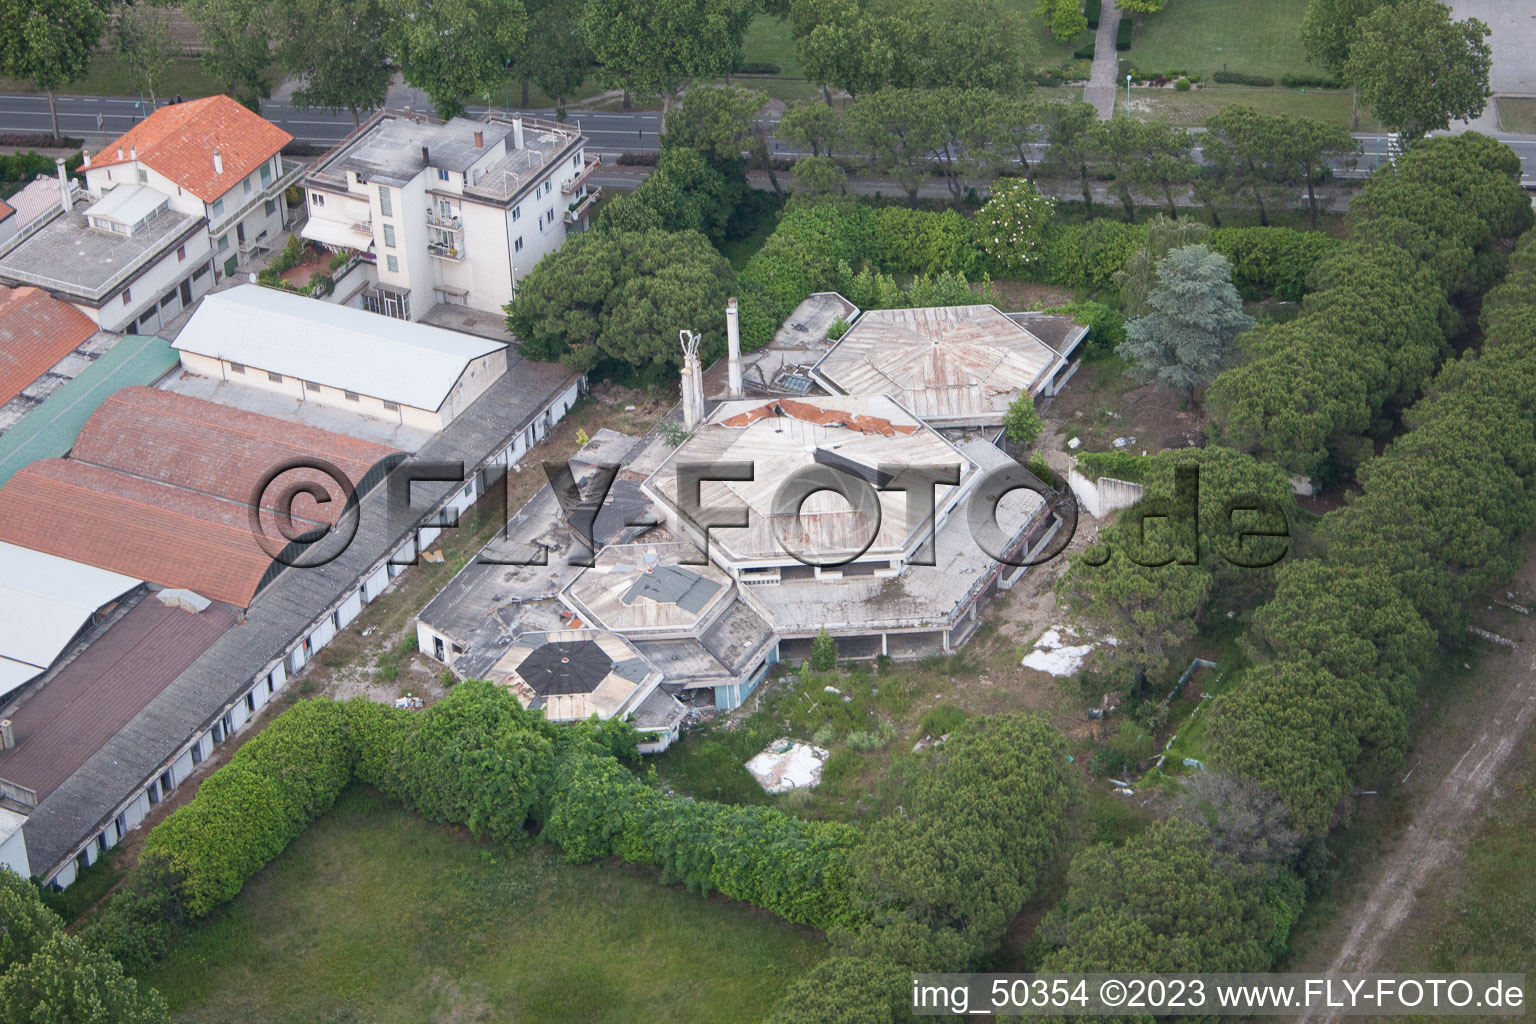 Drone recording of Lido di Jesolo in the state Veneto, Italy